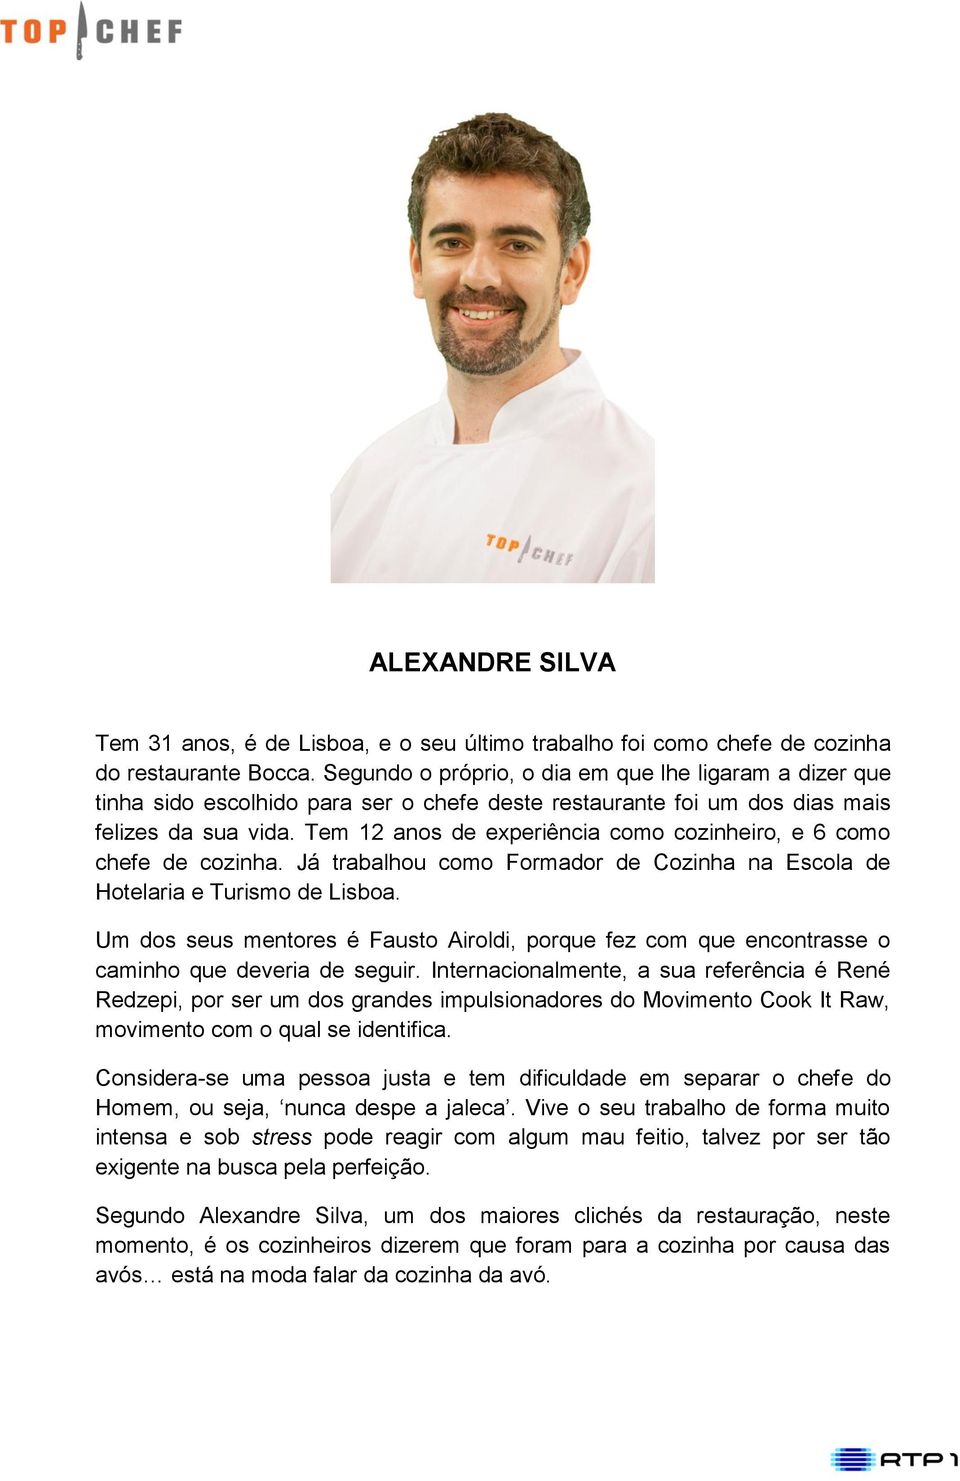 Tem 12 anos de experiência como cozinheiro, e 6 como chefe de cozinha. Já trabalhou como Formador de Cozinha na Escola de Hotelaria e Turismo de Lisboa.